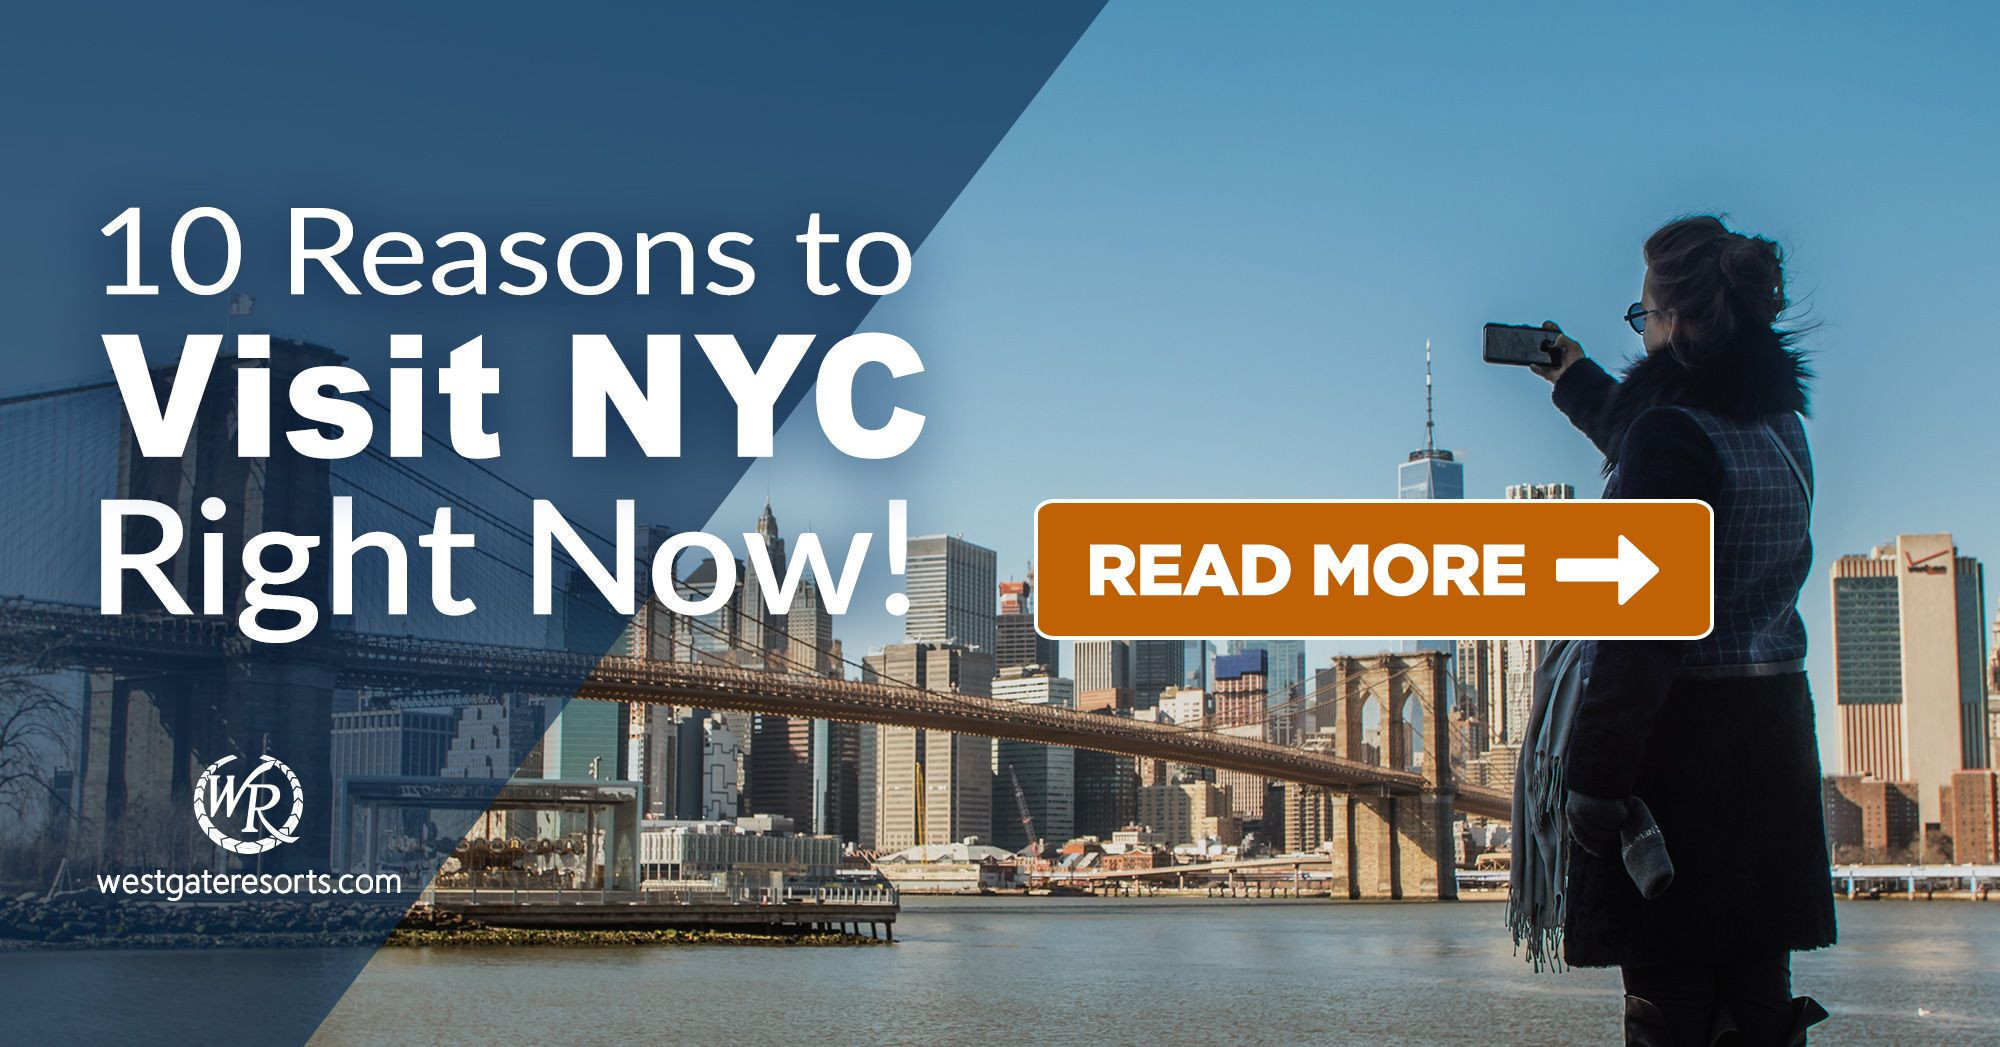 ¡10 razones para visitar la ciudad de Nueva York ahora mismo!